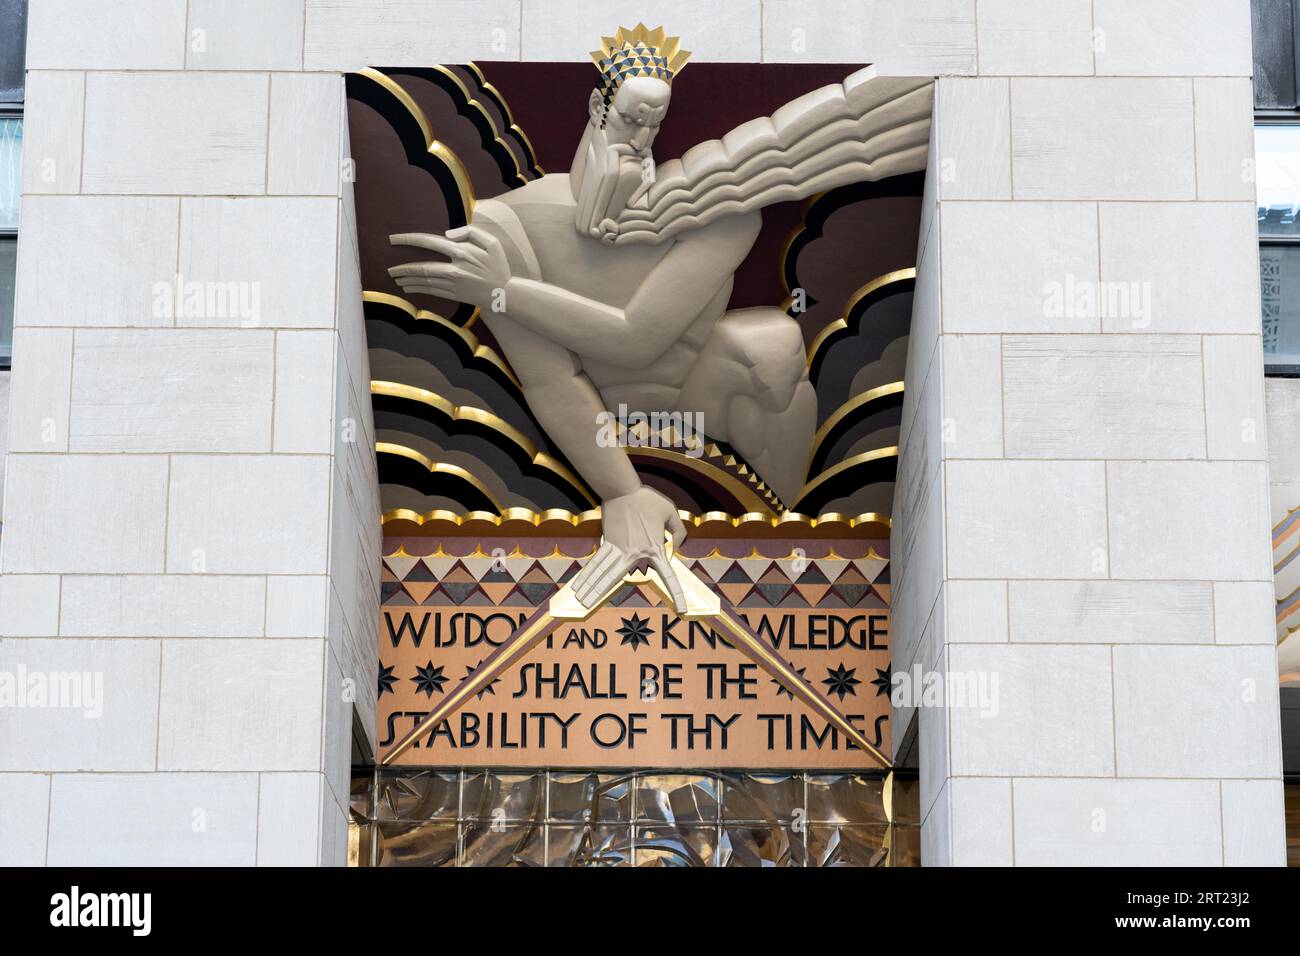 New York, United States of America, 21. September 2019: Weisheitsrelief über dem Eingang zum Hauptgebäude des Rockefeller Center. Erstellt von Stockfoto